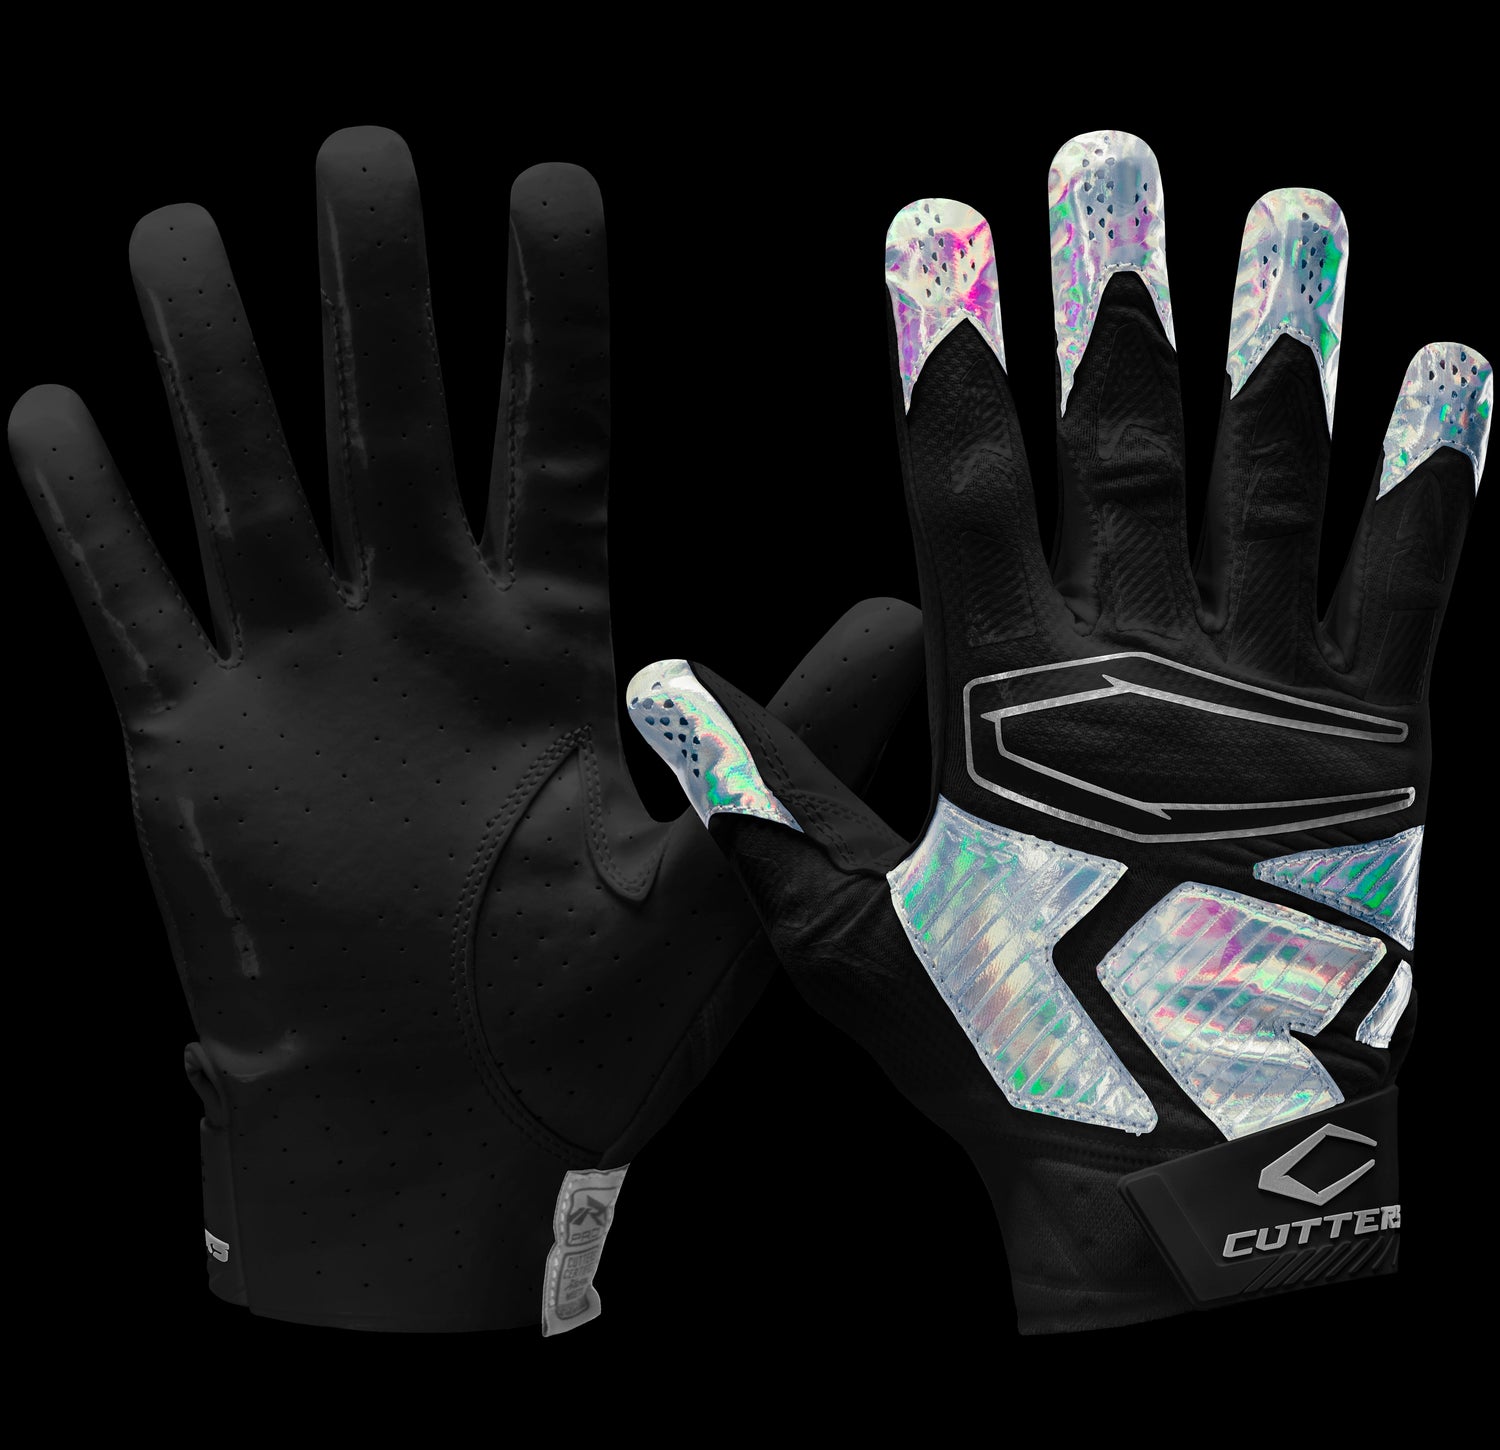 Rev Pro 4.0 Gloves - Black/Silver